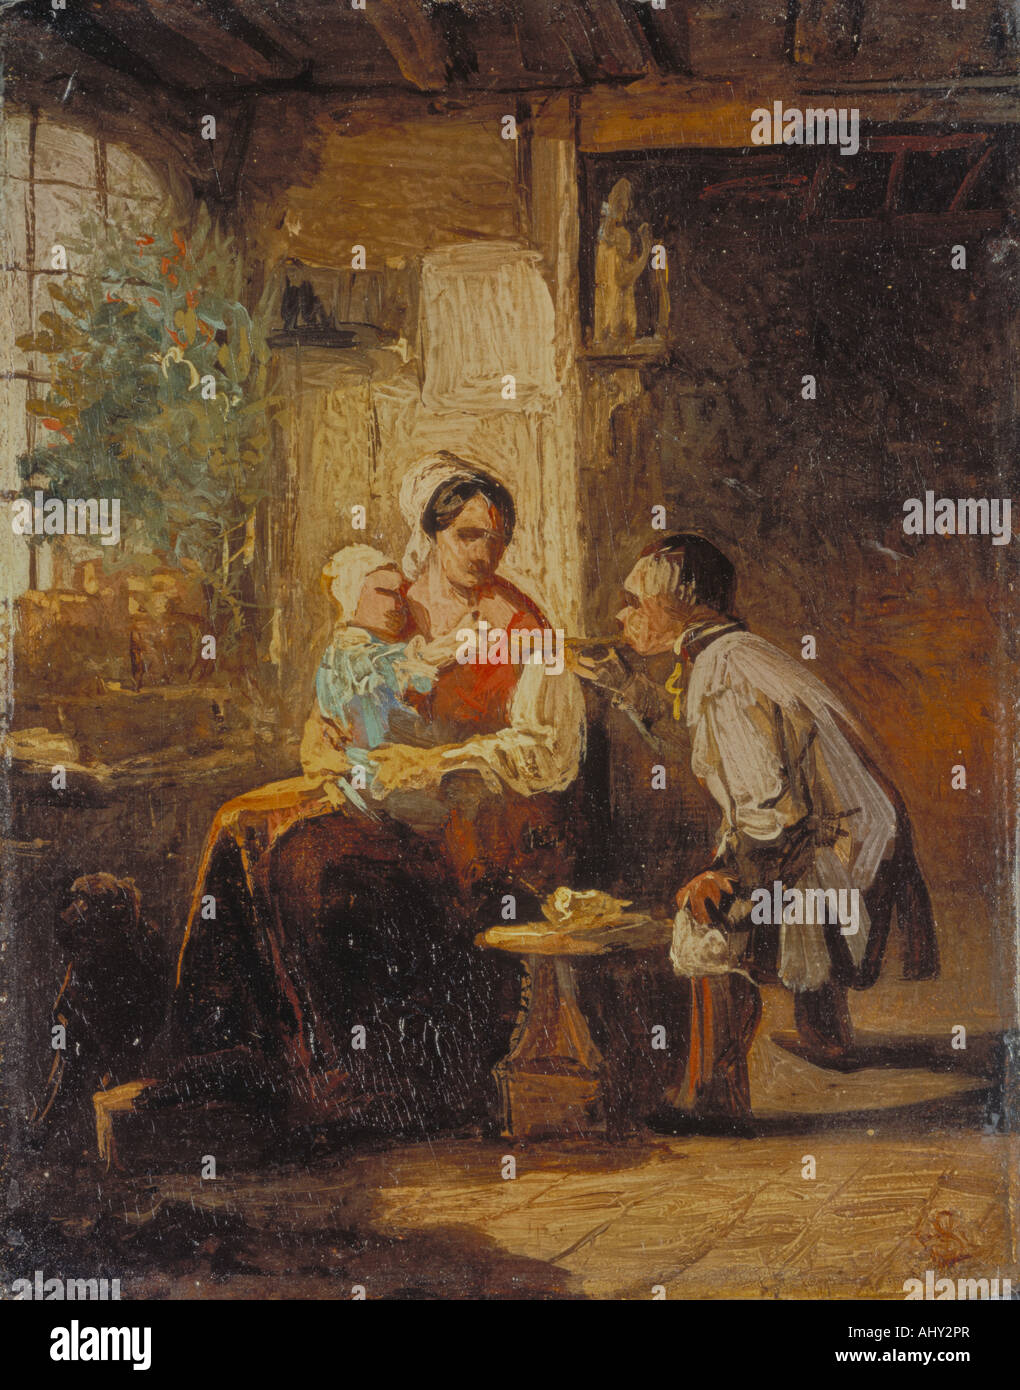 "Fine Arts, Moralt, Ludwig (1815 – 1888): Malerei,"Eltern Und Kind", Deutsch, Eltern und Kind, Familie, Mutter, Zimmer, Vater Stockfoto